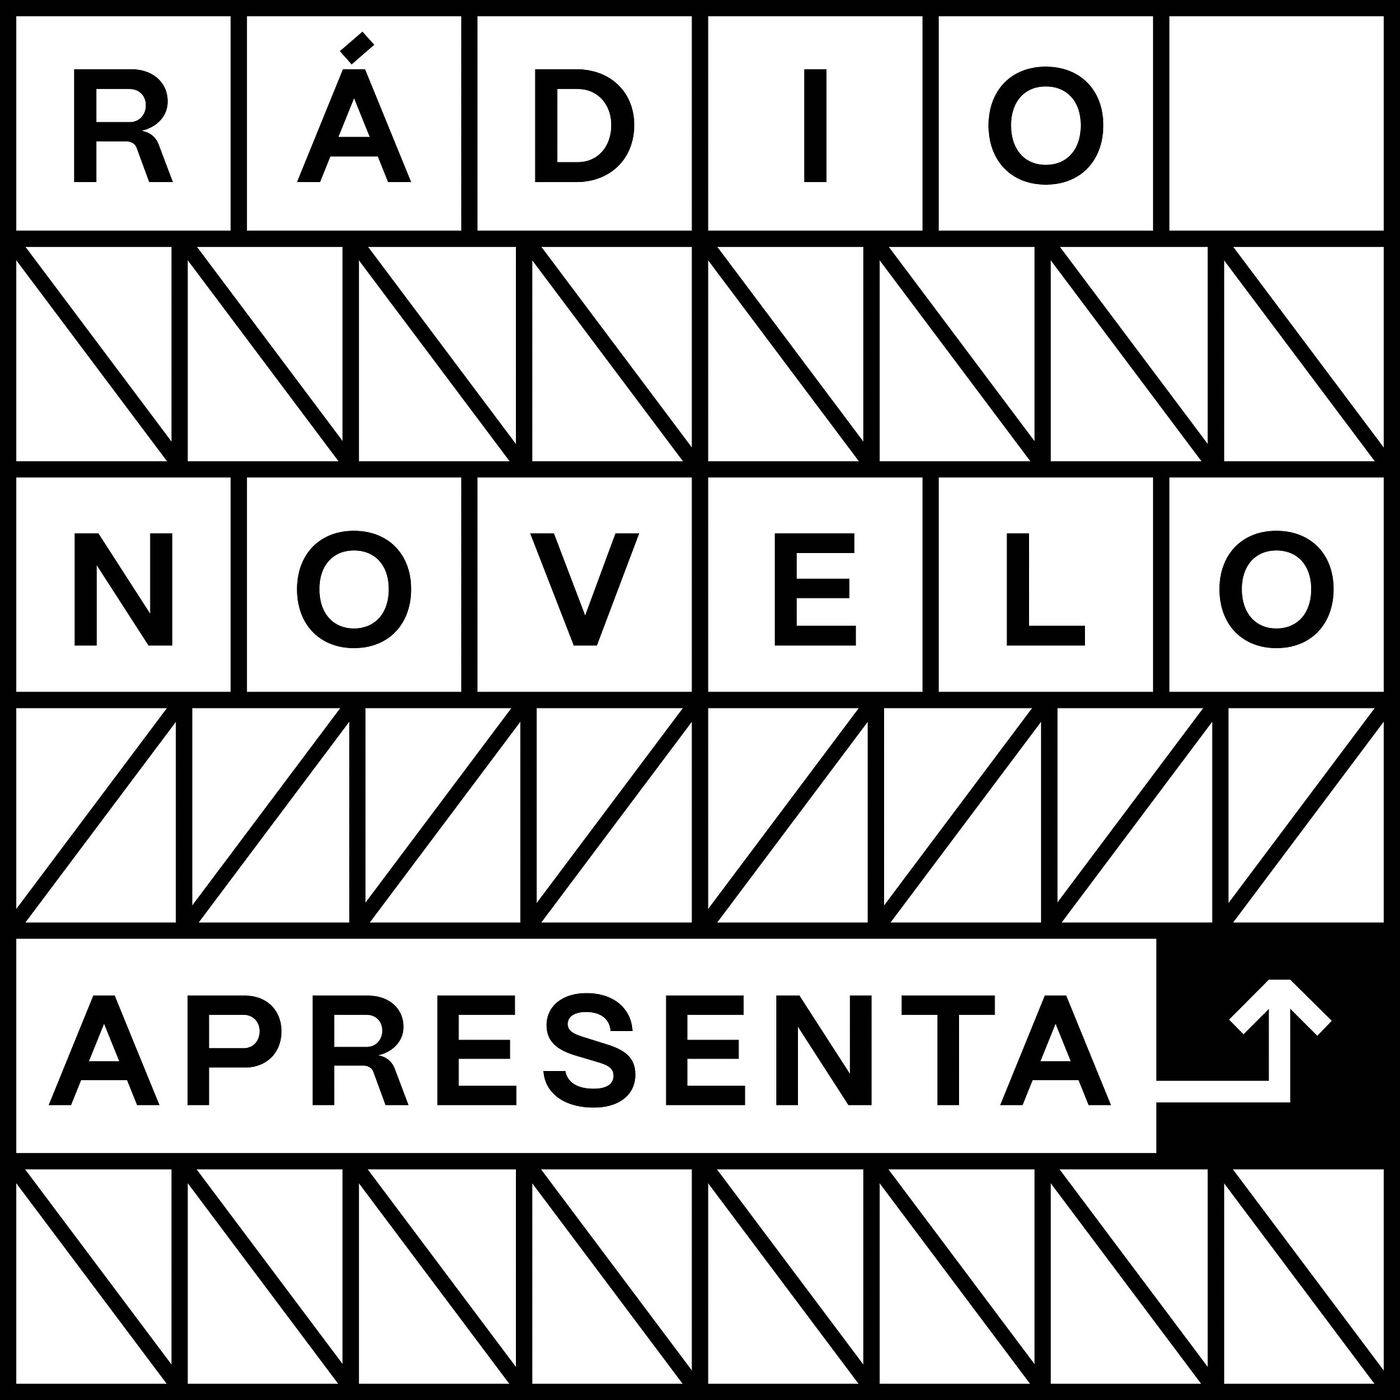 Conheça o podcast Rádio Novelo Apresenta